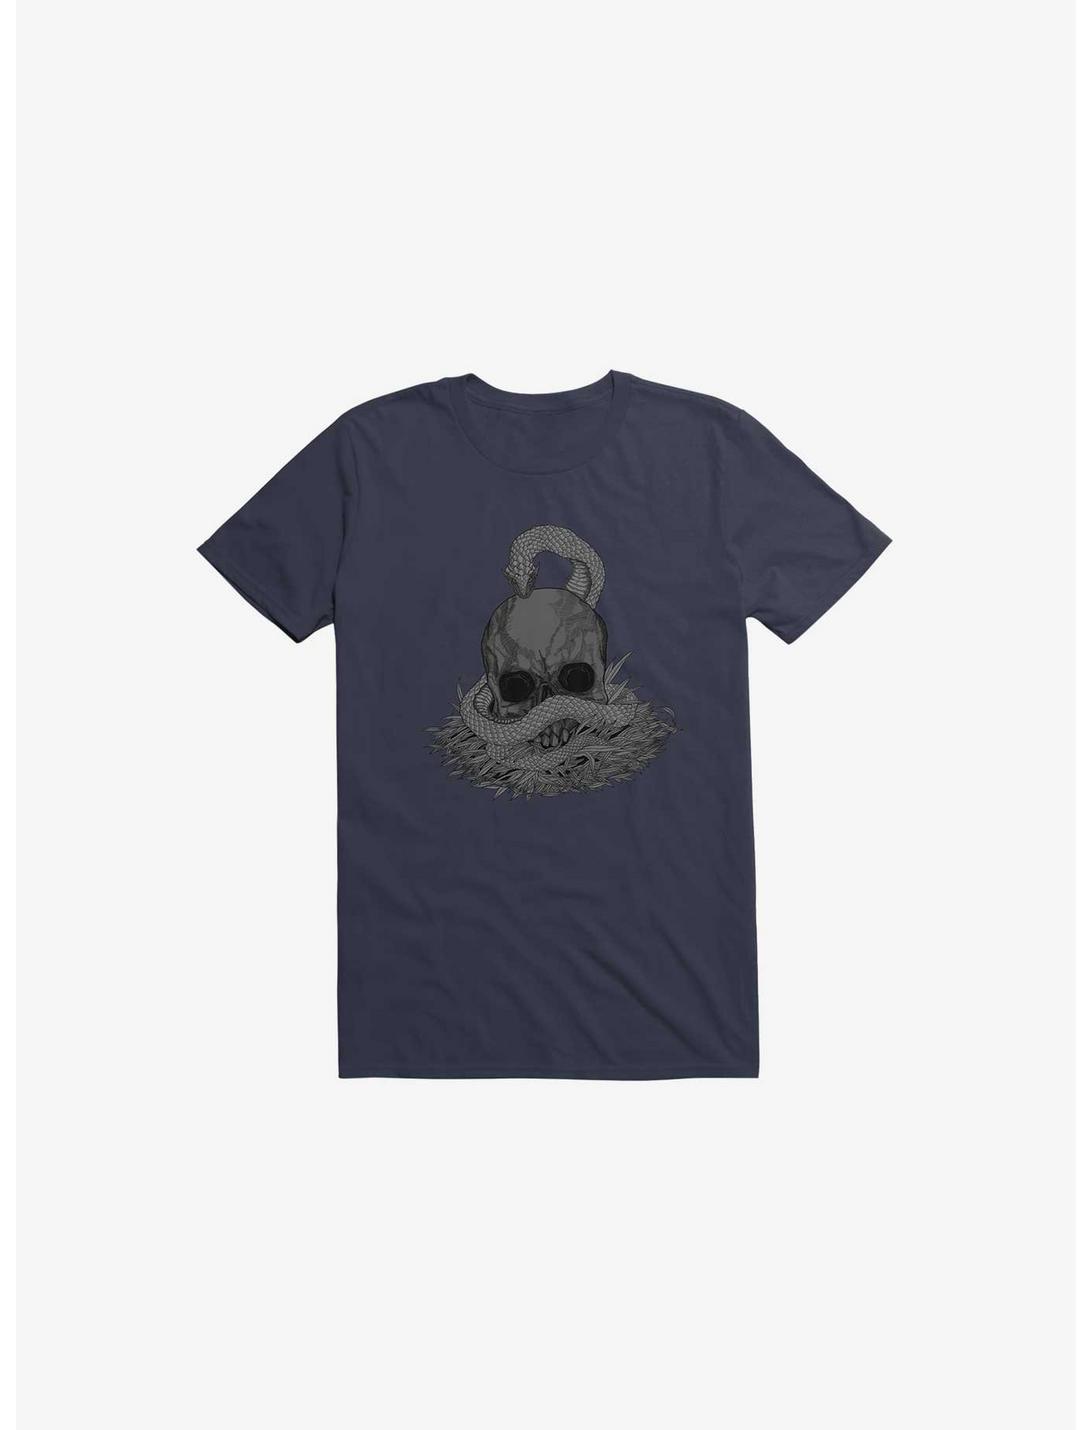 Snake & Skull Navy Blue T-Shirt, NAVY, hi-res